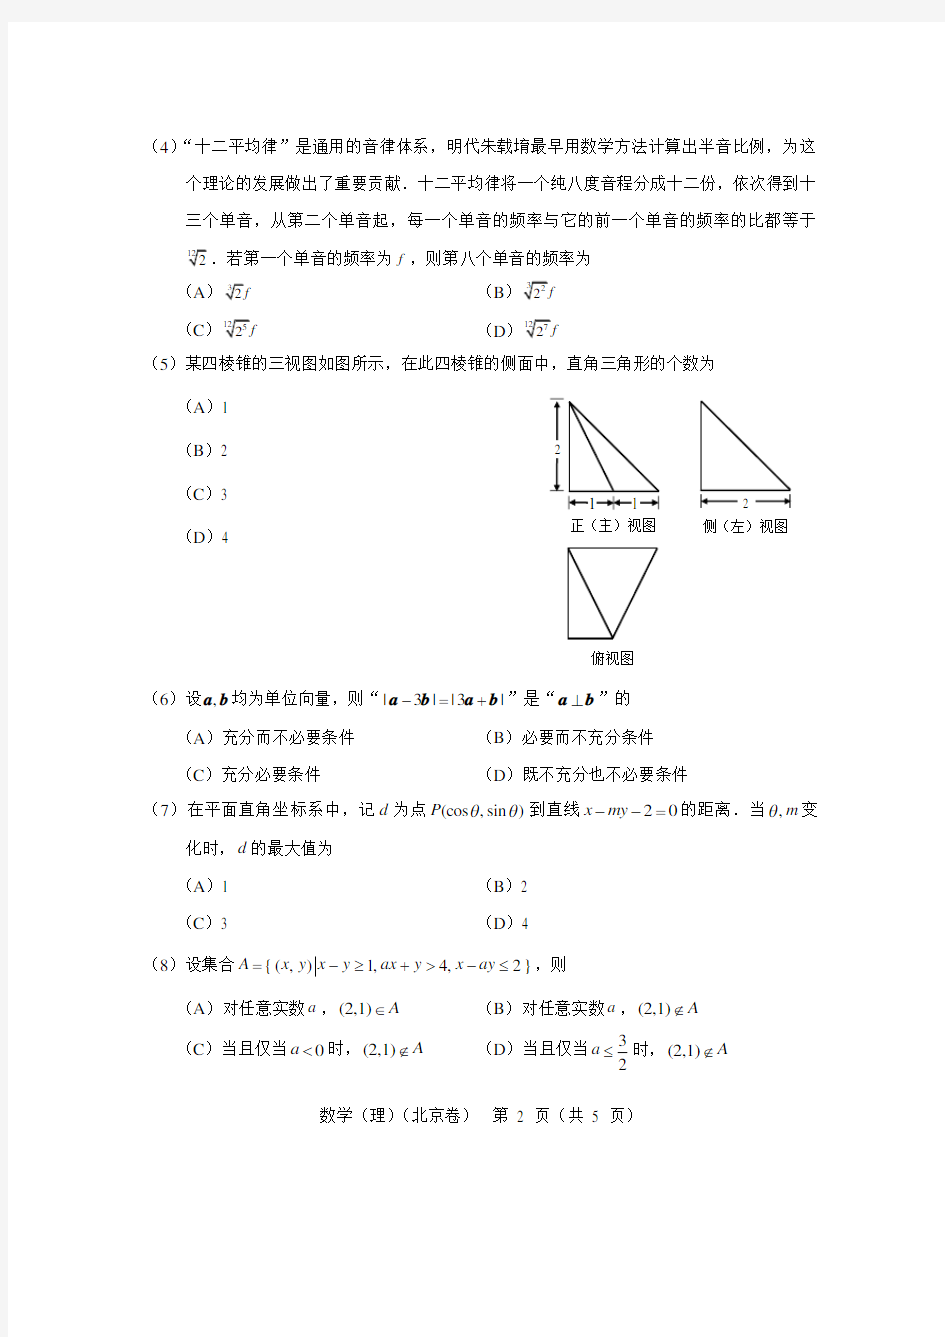 2018年北京高考数学试题(理科)